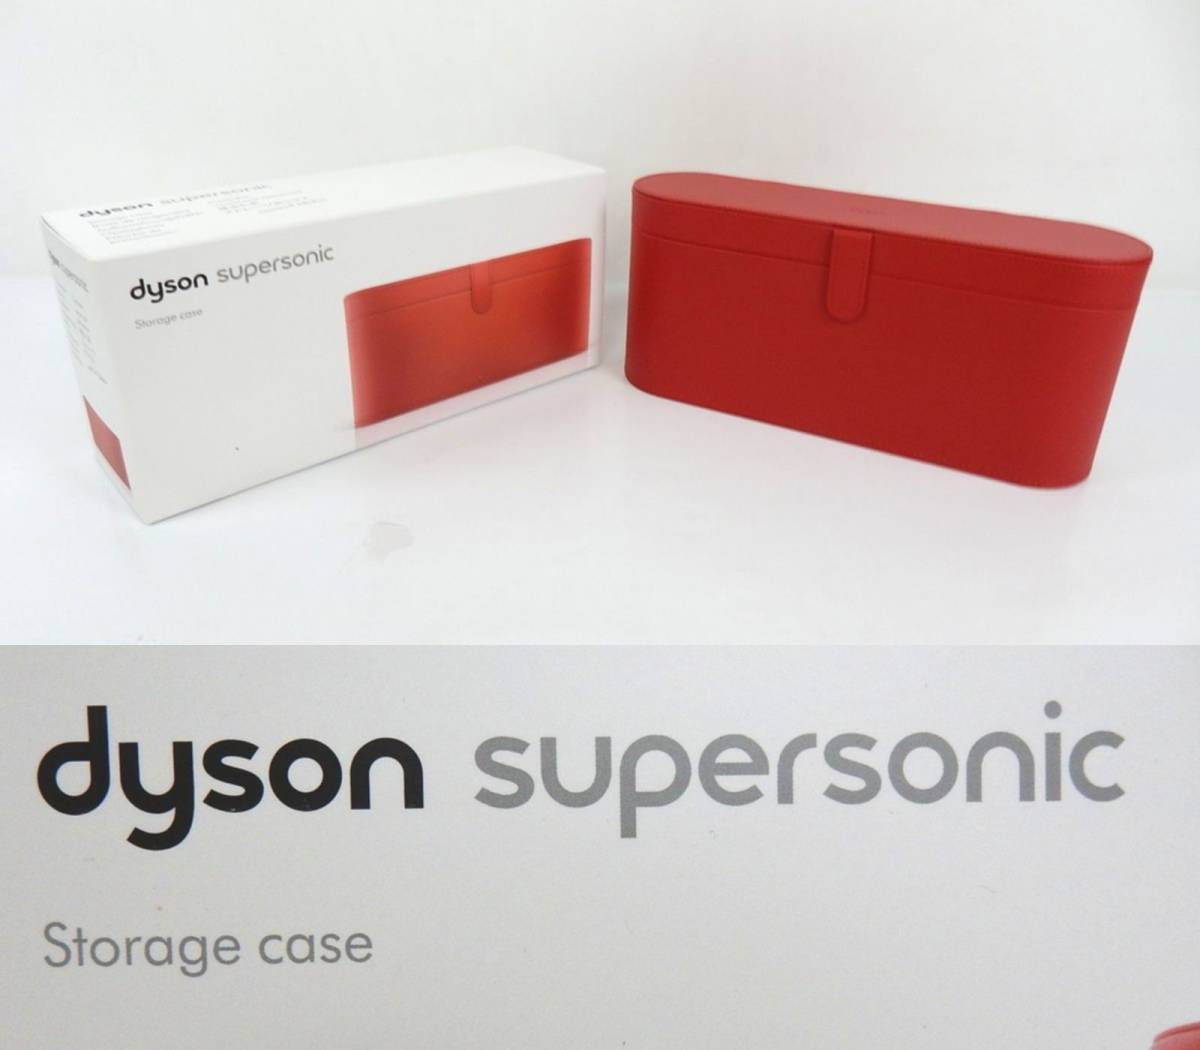 【dyson】ダイソン Supersonic スーパーソニック ドライヤー用 ストレージボックス 赤 レッド 中古美品？ 中古品 JUNK 一切返品不可で！_画像1